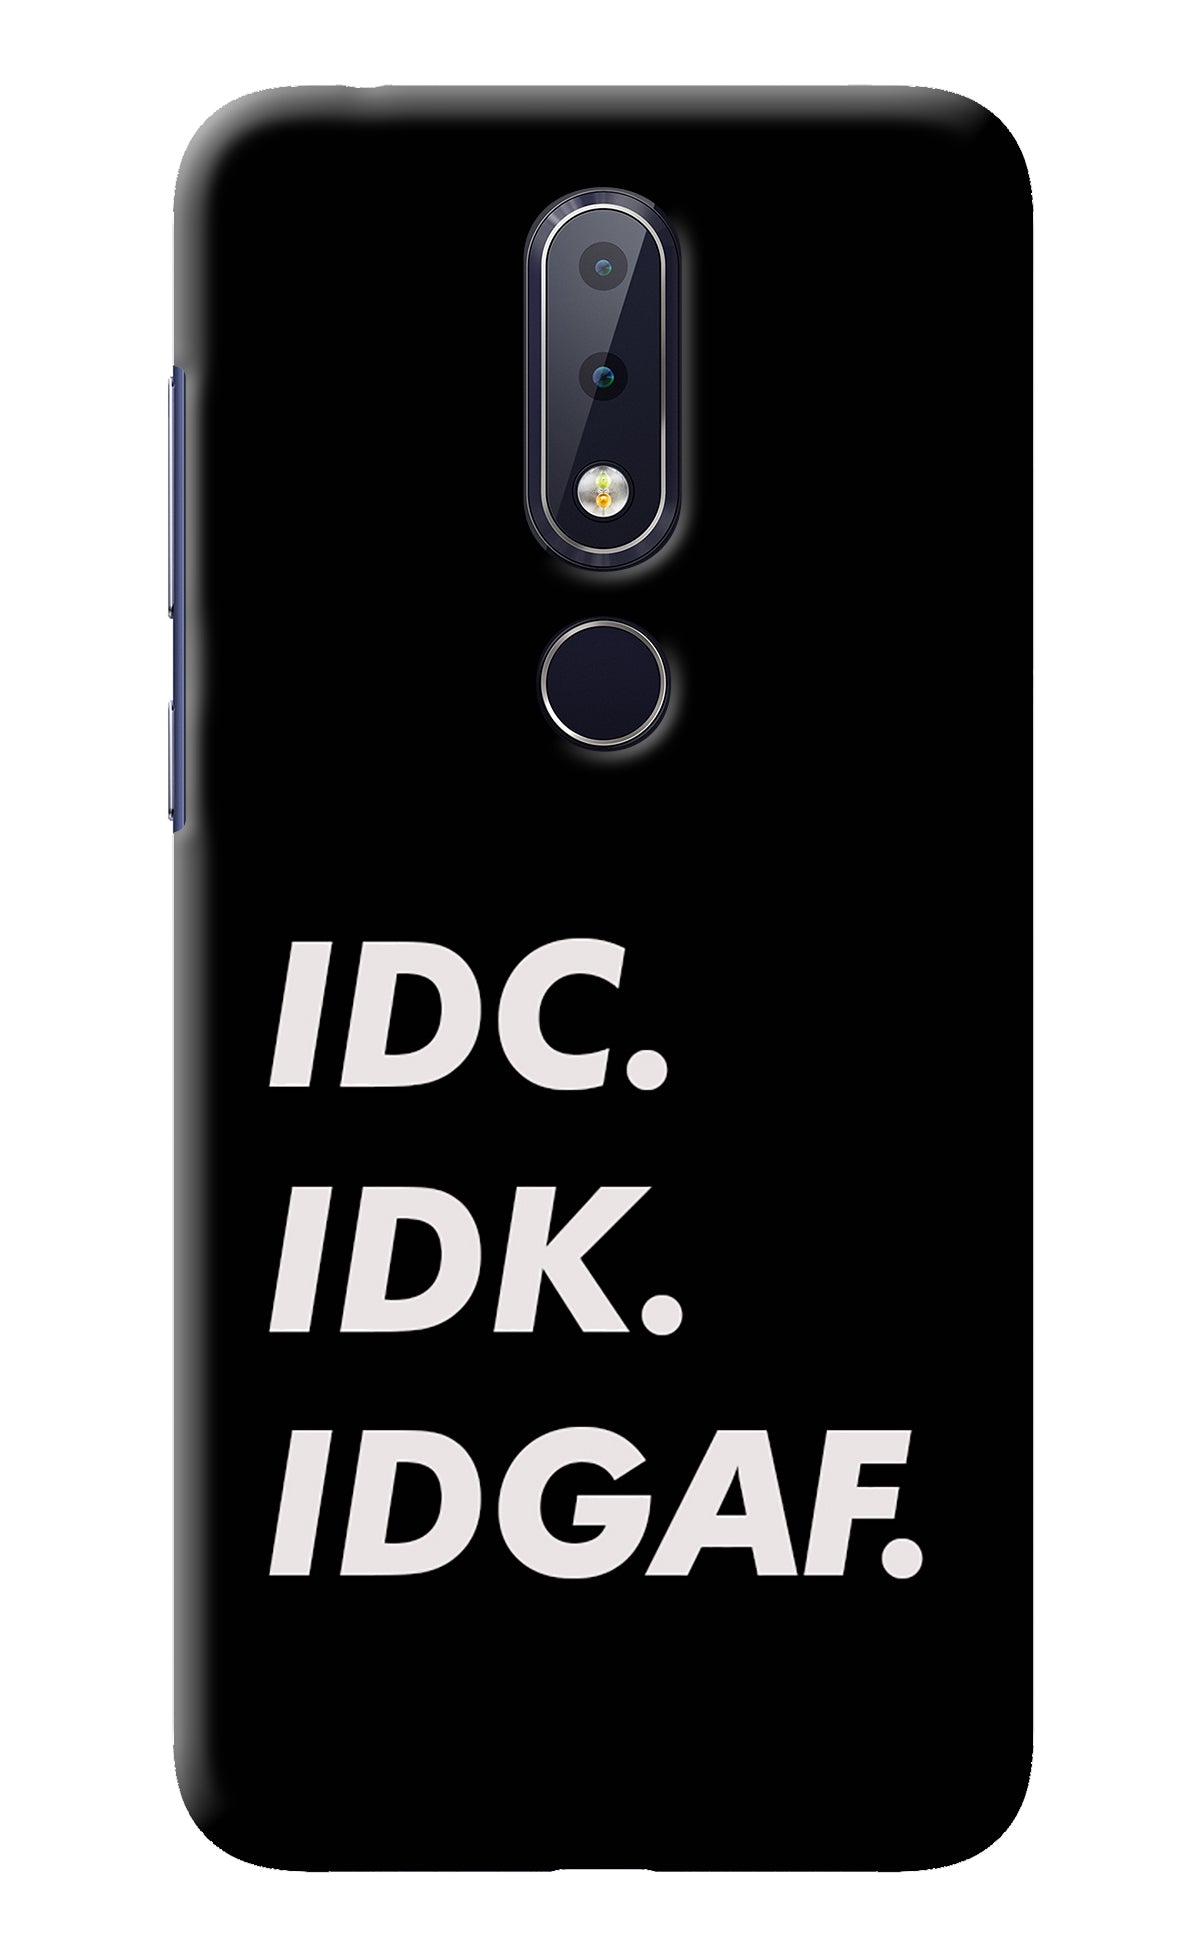 Idc Idk Idgaf Nokia 6.1 plus Back Cover